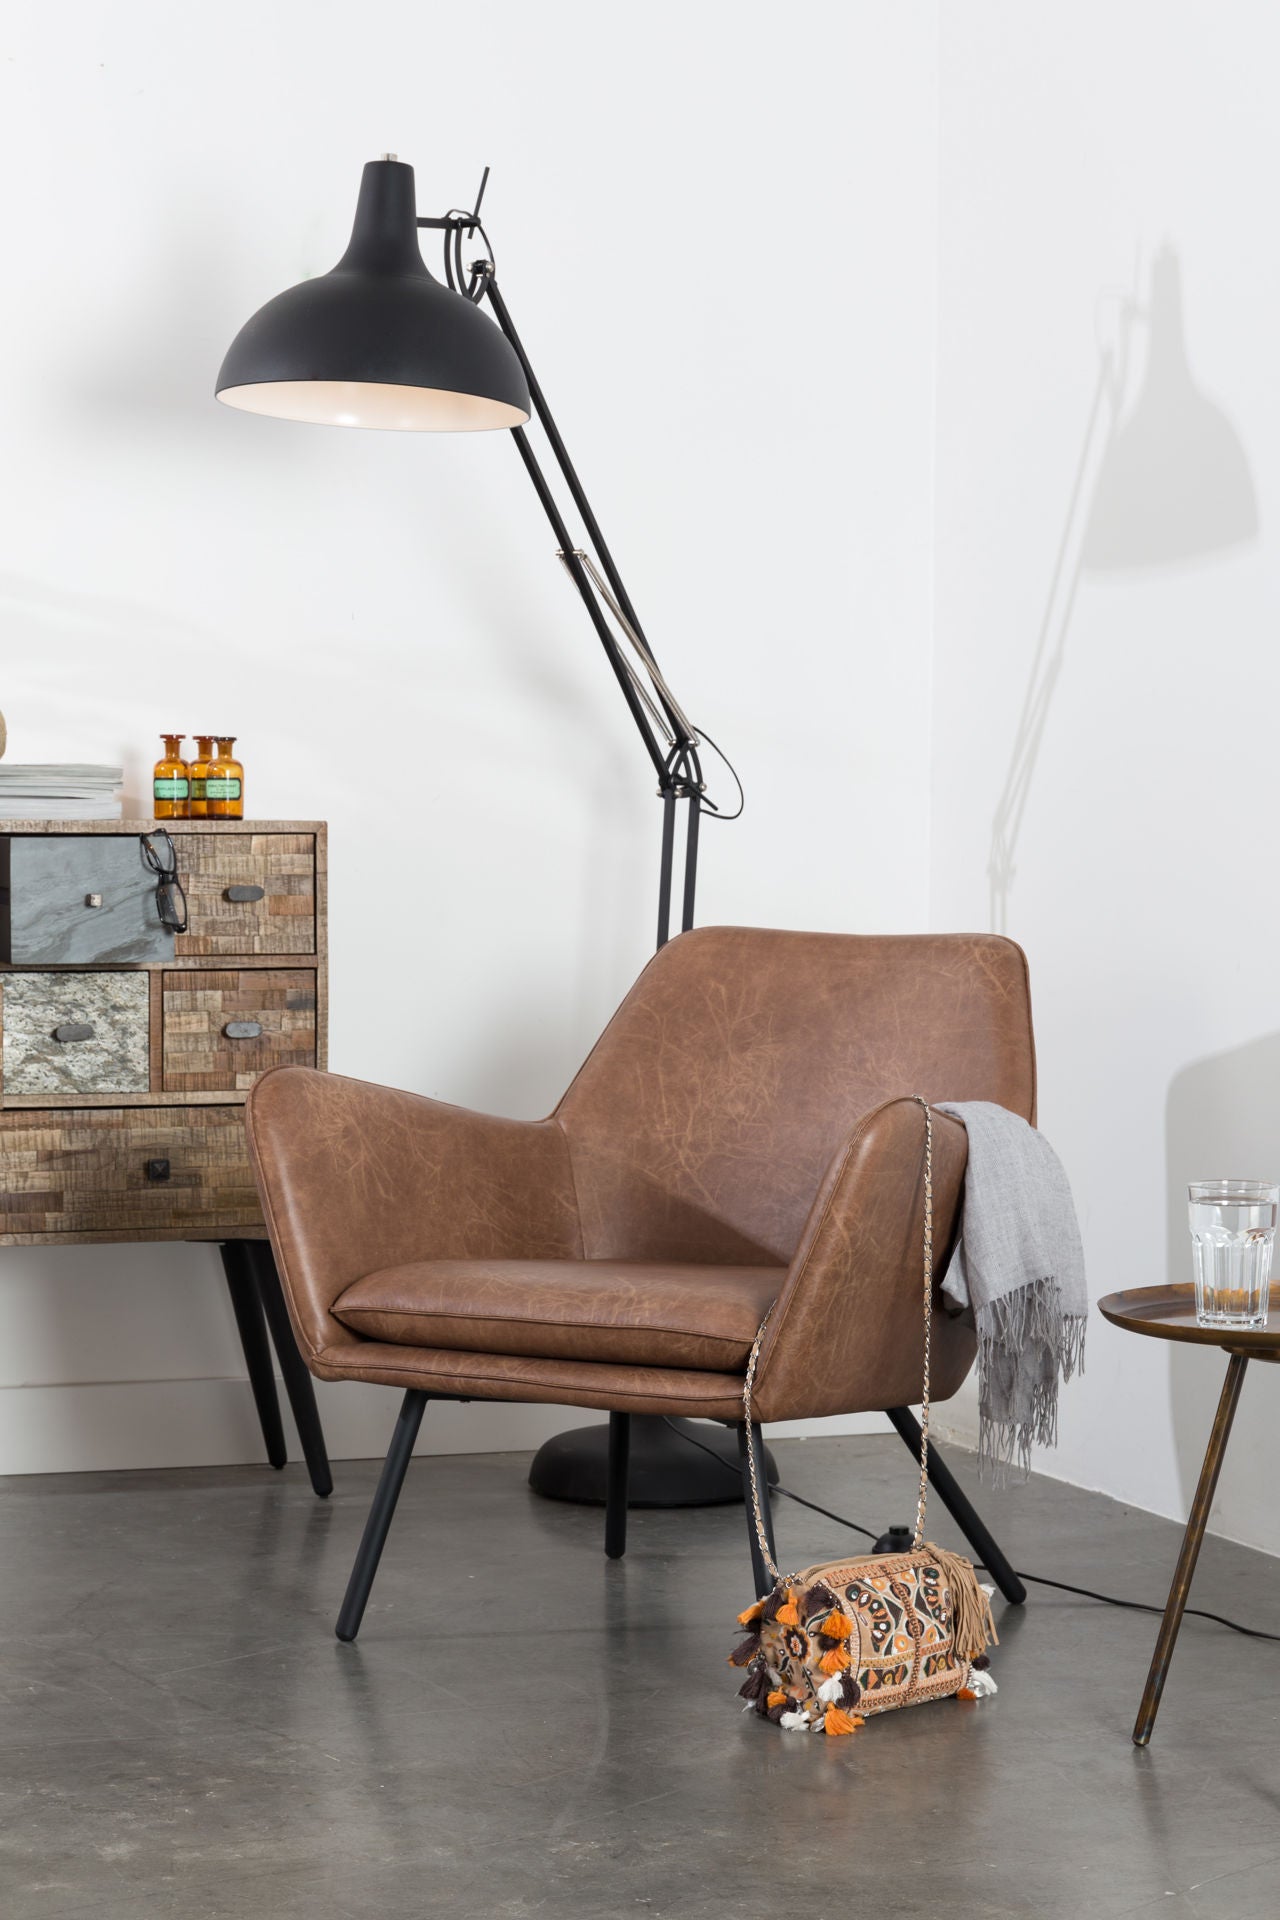 Nancy's Healdsburg Lounge Chair - Industriel - Marron - Pu-Cuir, Mousse, Contreplaqué - 76 cm x 80 cm x 78 cm